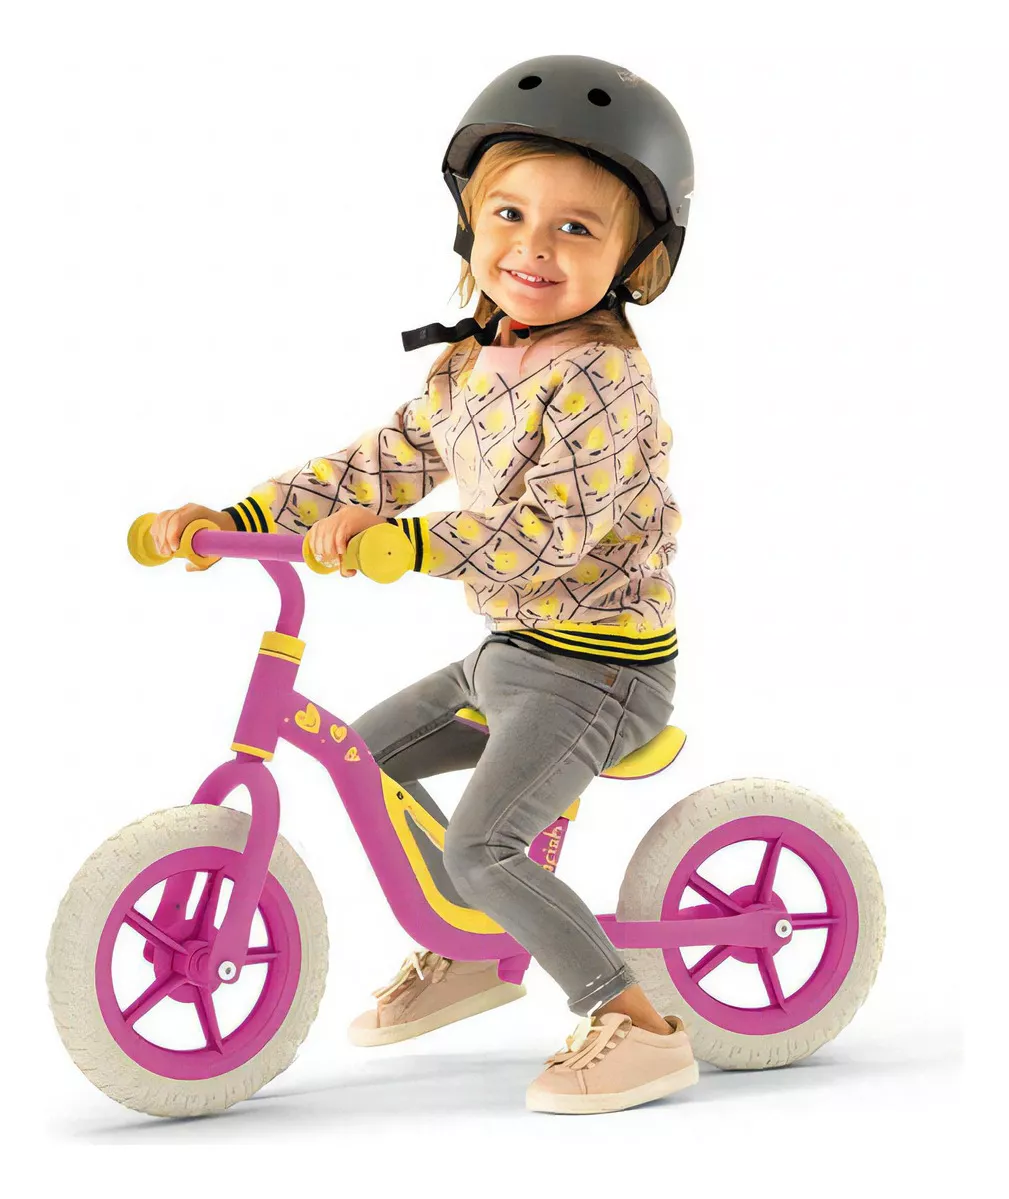 Tercera imagen para búsqueda de bicicleta equilibrio niño